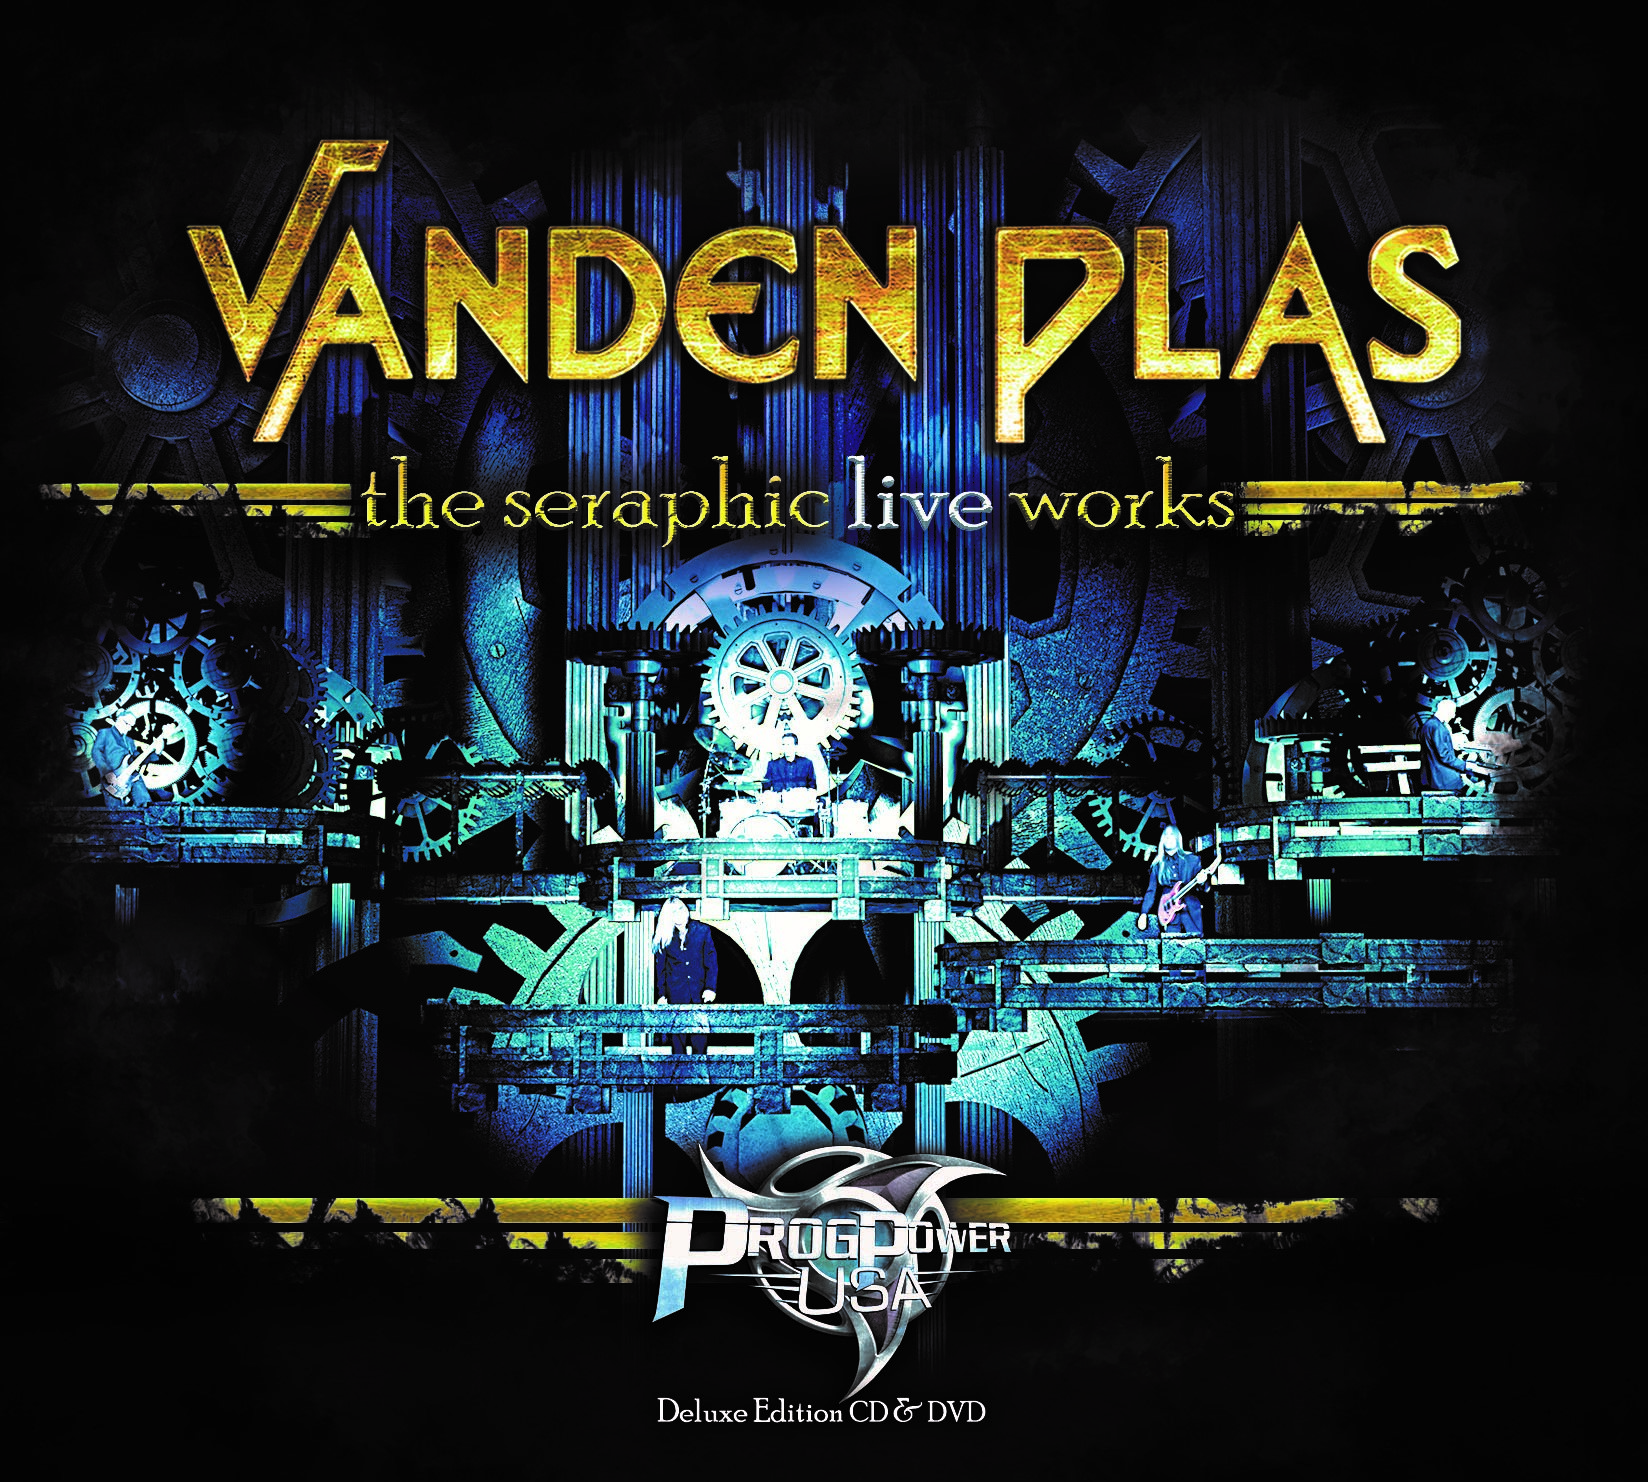 Vanden Plas - The Seraphic Live Works - CD+DVD